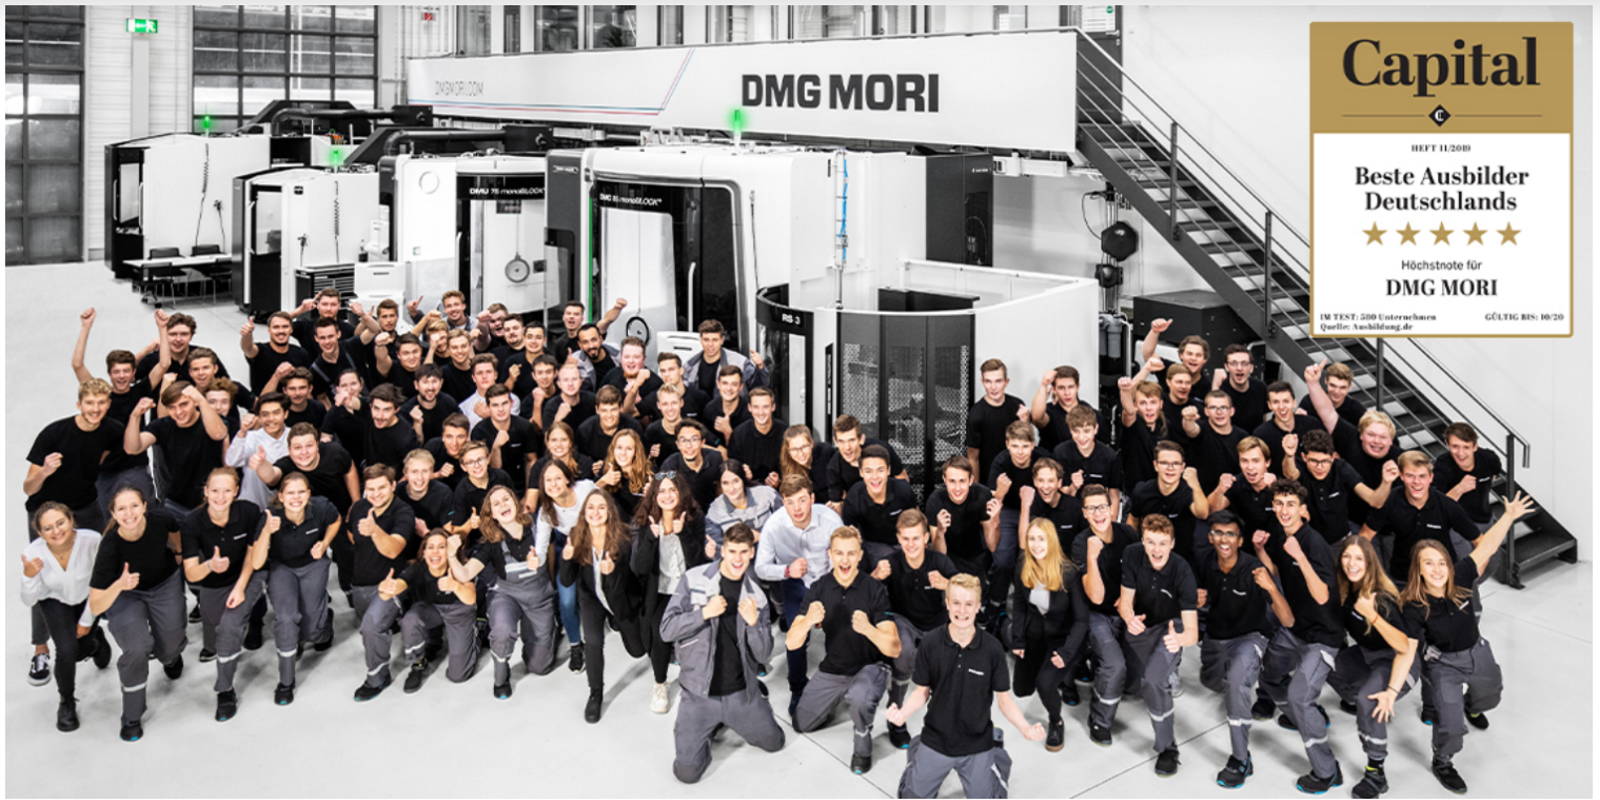 Zum dritten Mal in Folge gehört DMG MORI zu den besten Ausbildern in Deutschland. DYNAMIC . EXCELLENCE